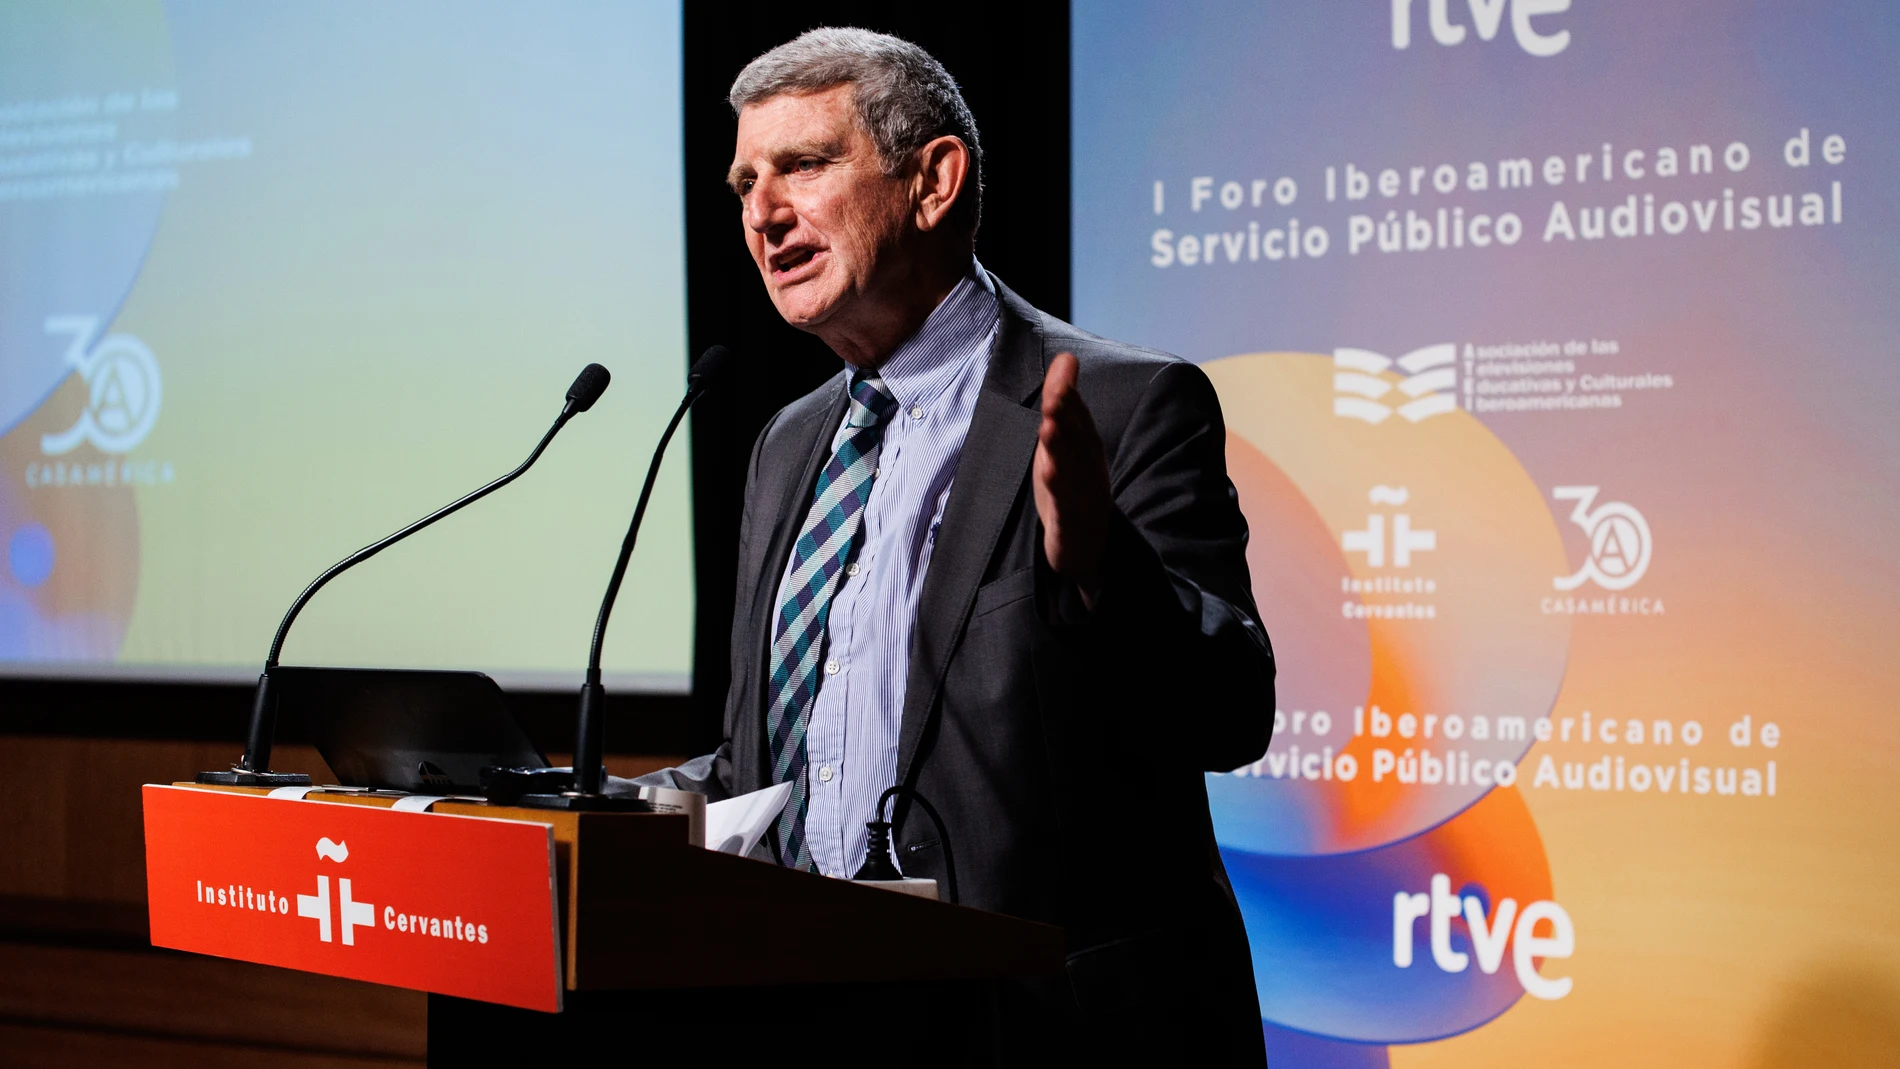 El presidente de RTVE, José Manuel Pérez Tornero, interviene en la clausura del I Foro Iberoamericano de Servicio Público Audiovisual, en el Instituto Cervantes